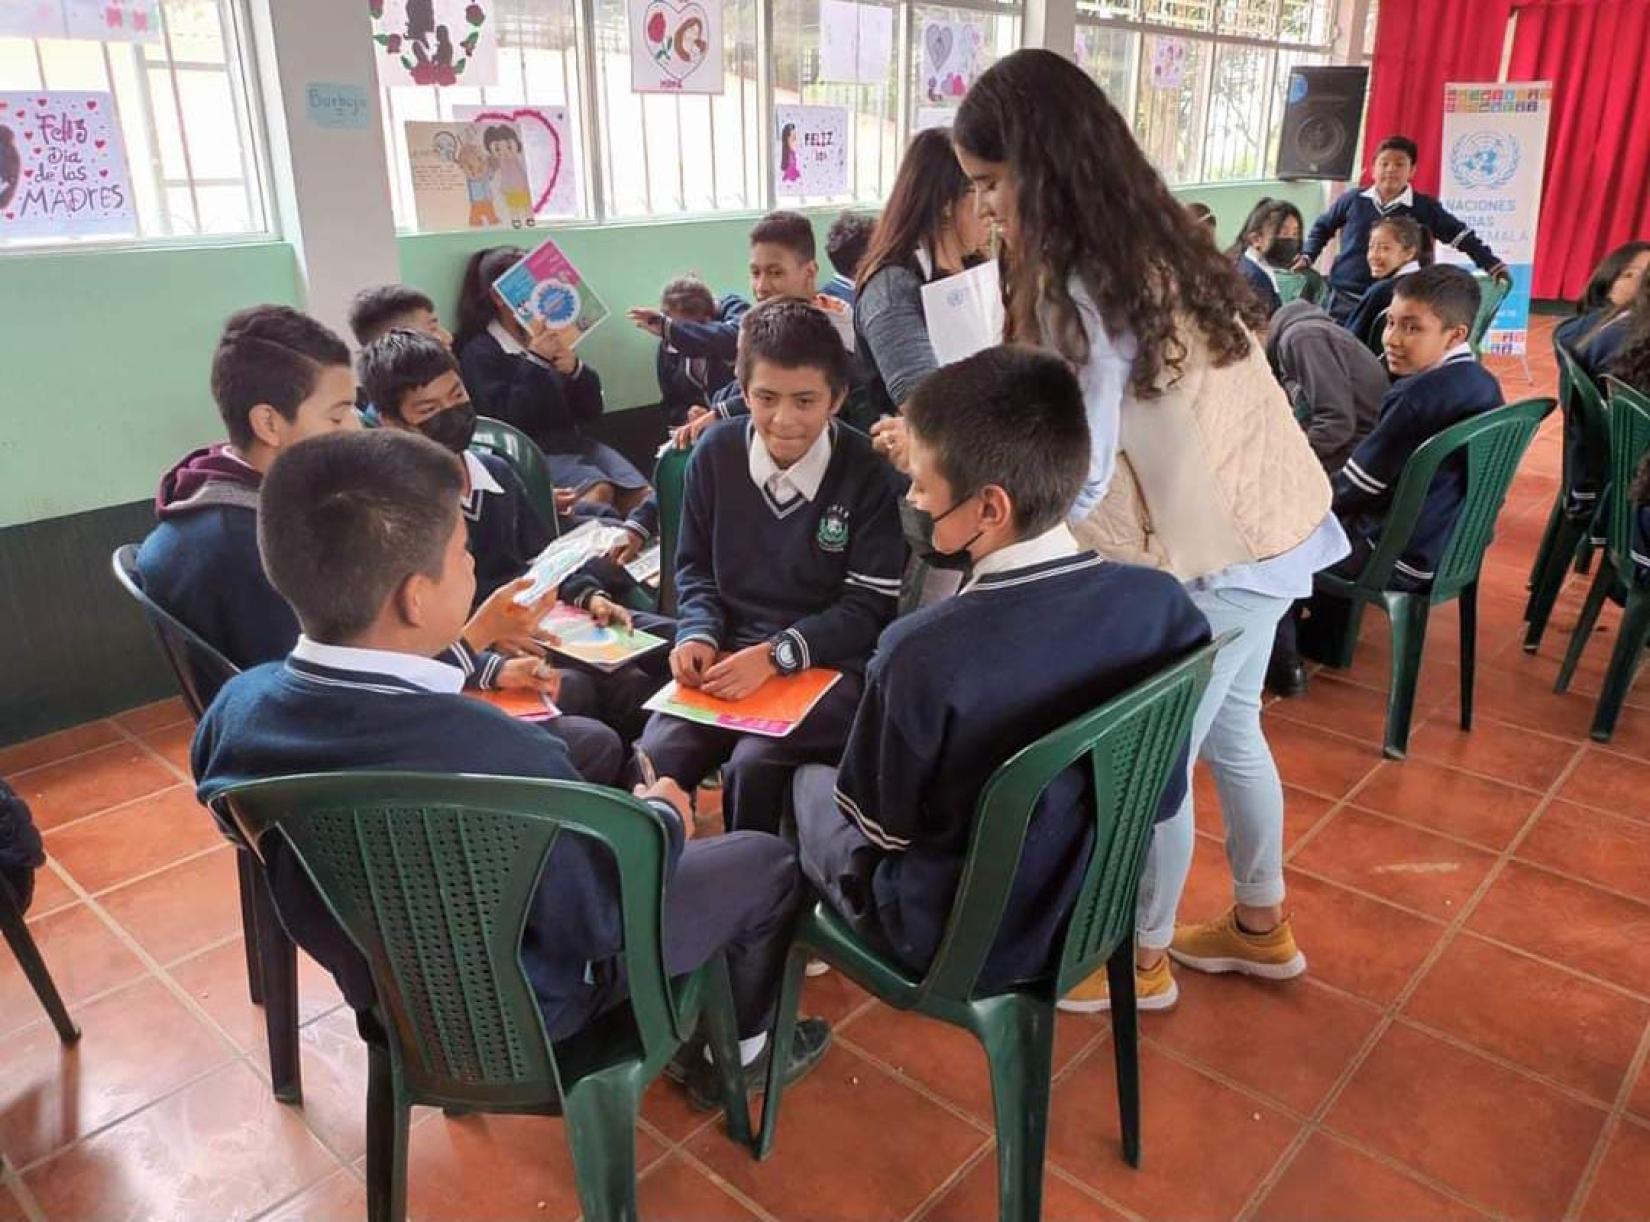 Sofia de pie, entrega materiales a jóvenes sentados en círculos de trabajo en su salón de clases